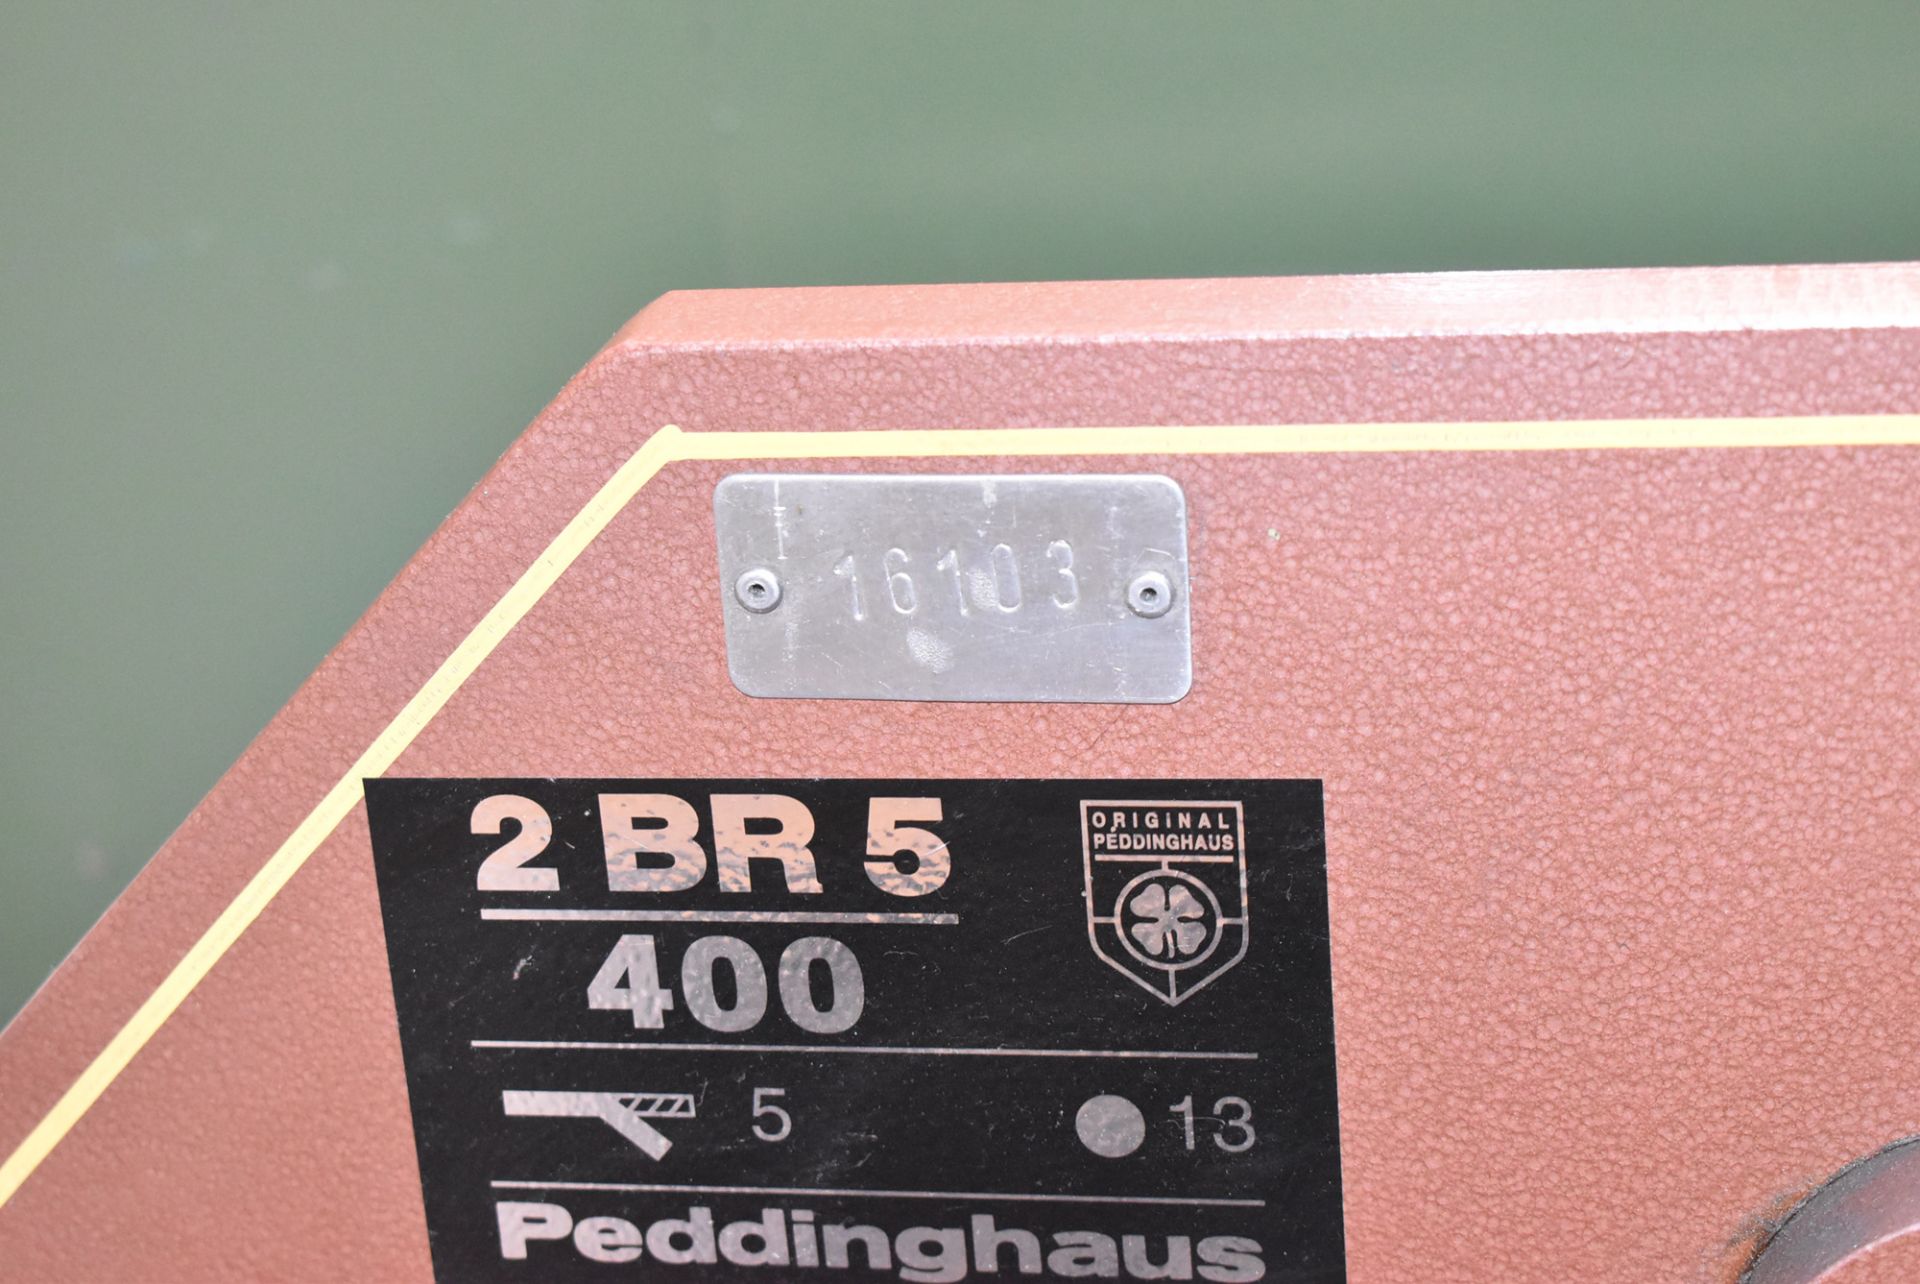 PEDDINGHAUS 2 BR 5 / 400 CONVENTIONAL SHEAR WITH 5 MM X 13 MM CAPACITY, FLOOR STAND, S/N N/A (BAU - Bild 2 aus 3